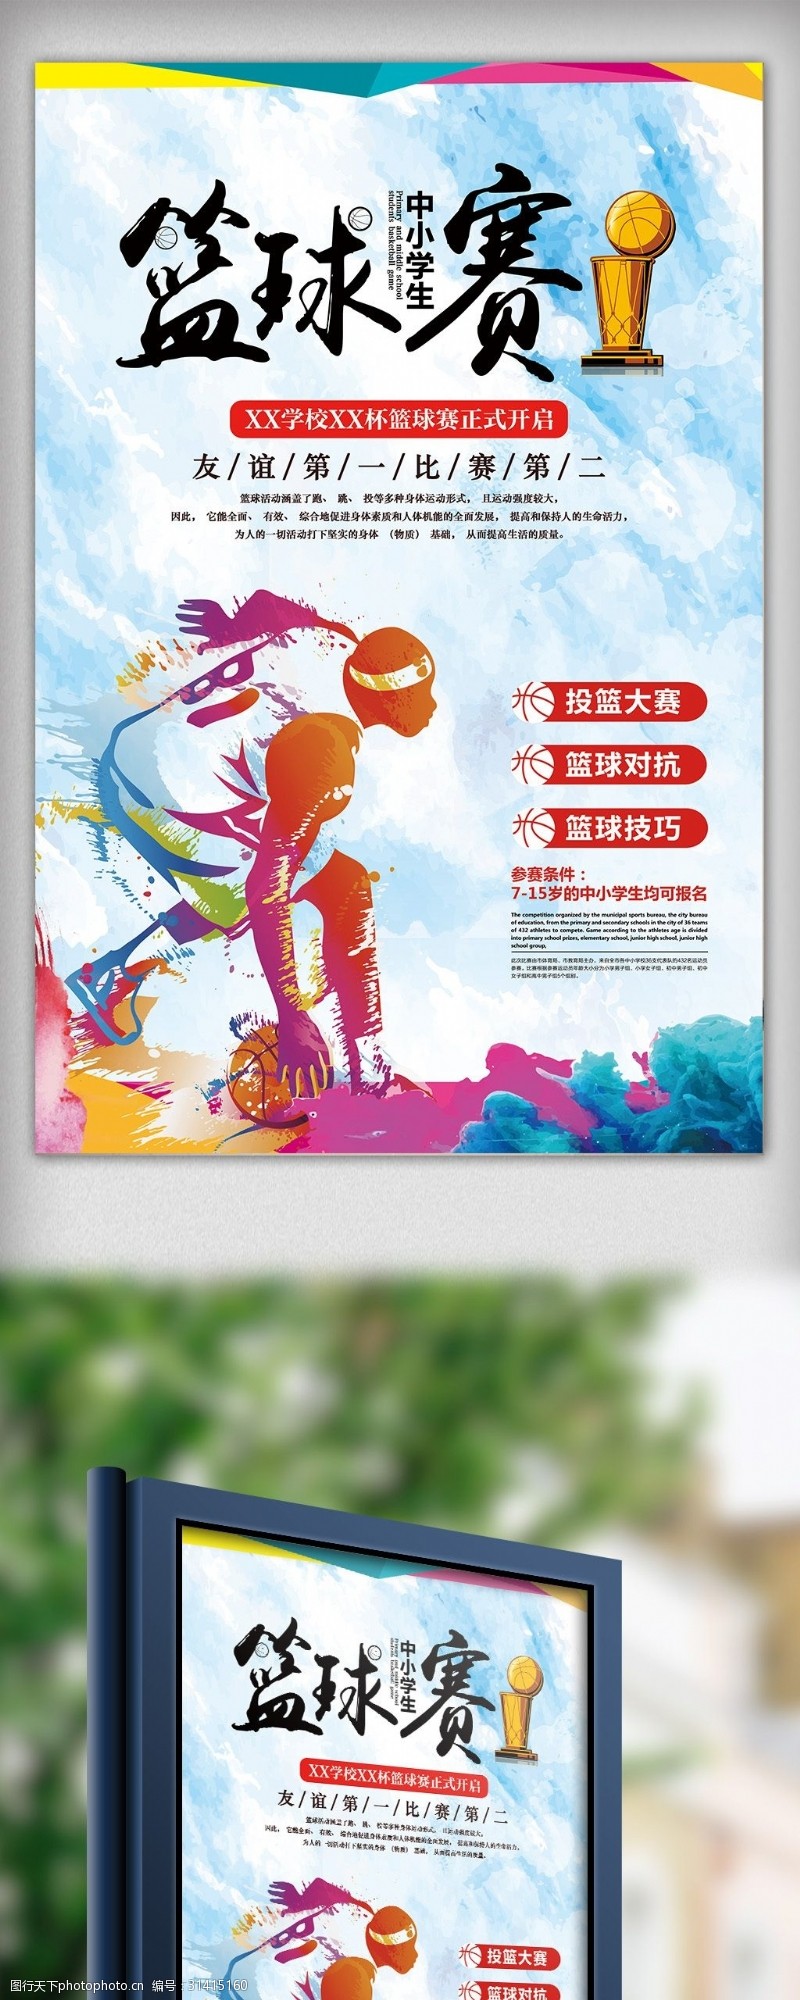 2018年中小学生篮球赛海报